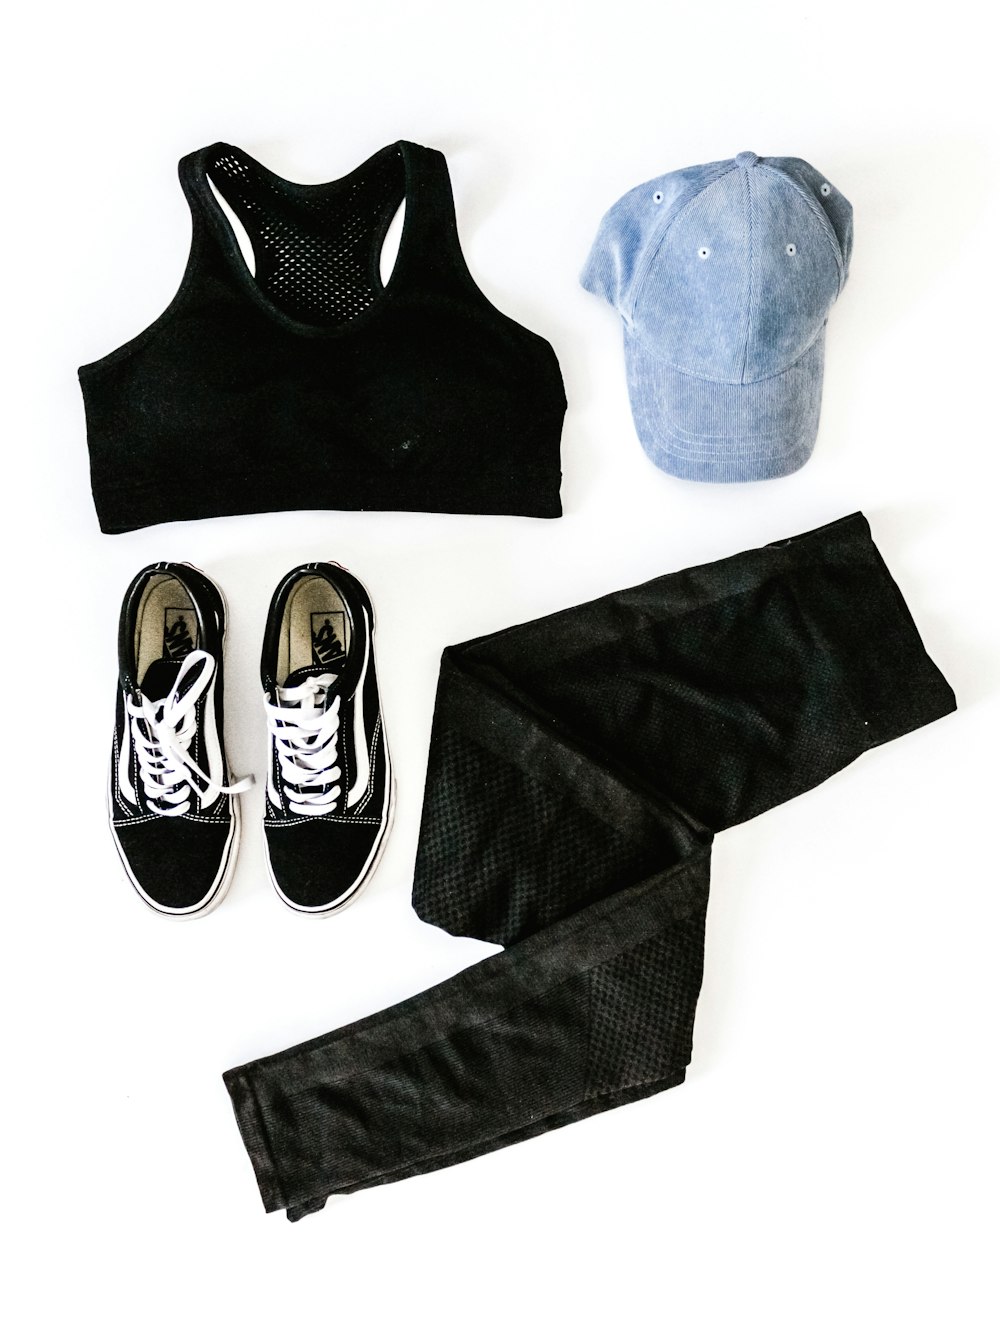 women's black sports bra, blue cap, pair of Vans sneakers, and black denim jeans